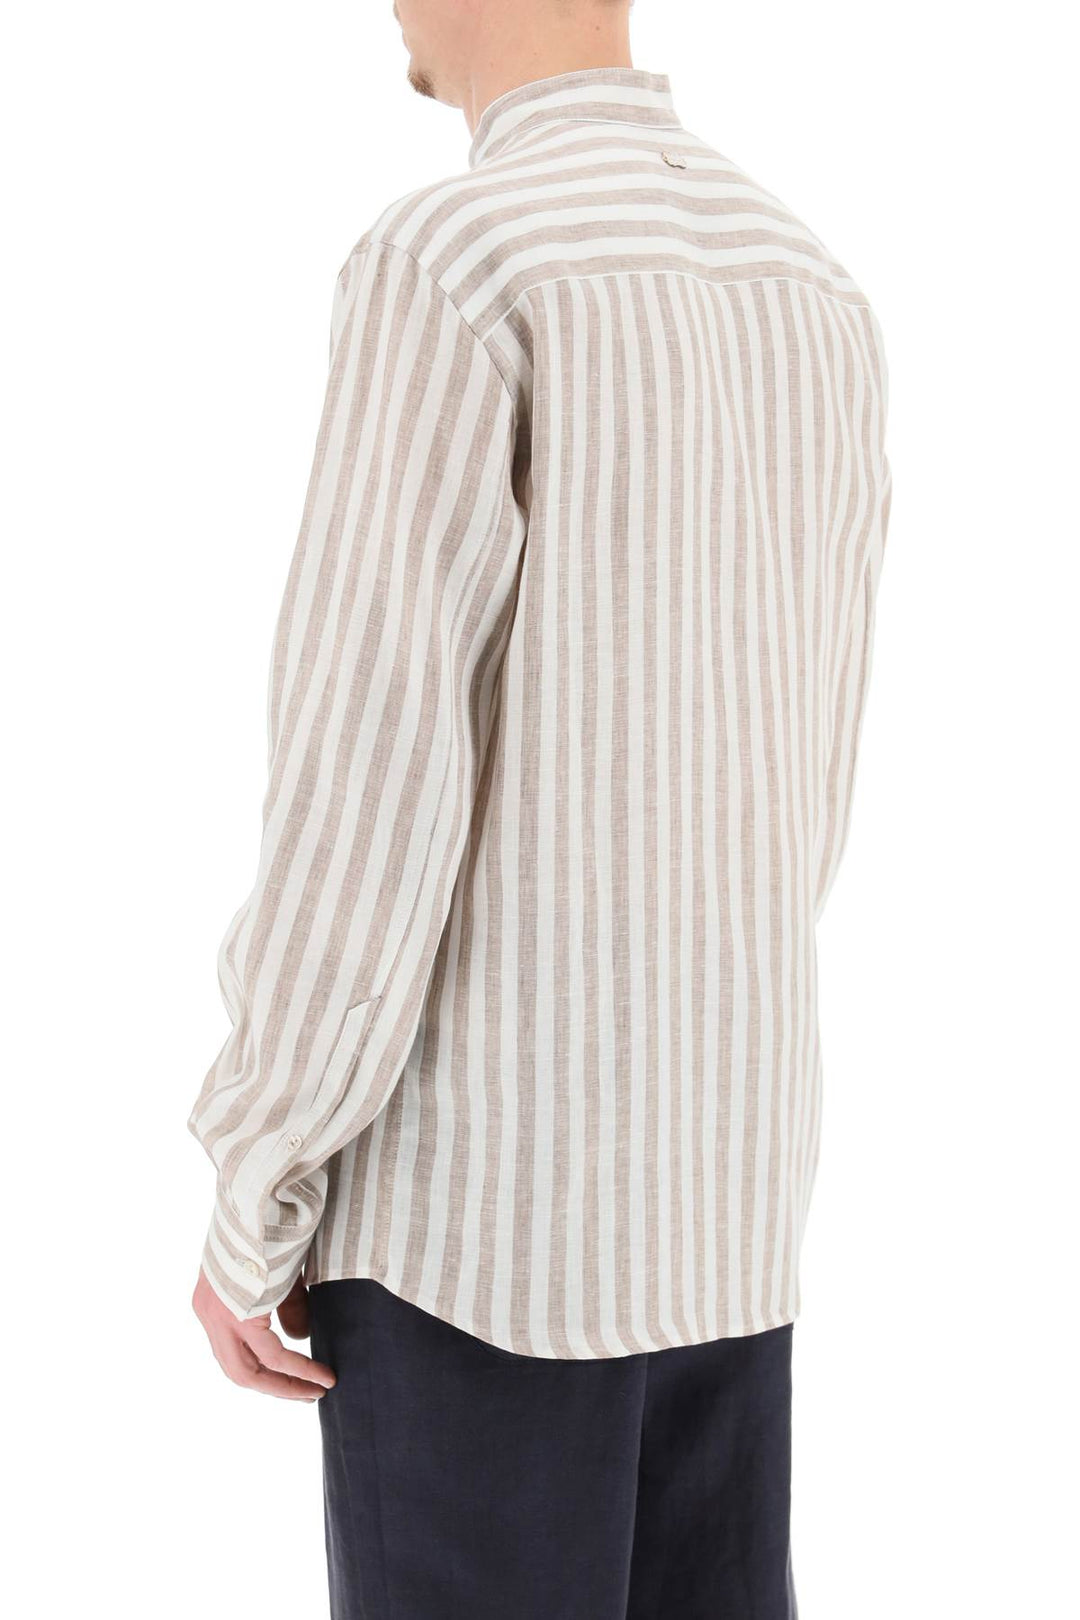 Agnona Striped Linen Shirt   White